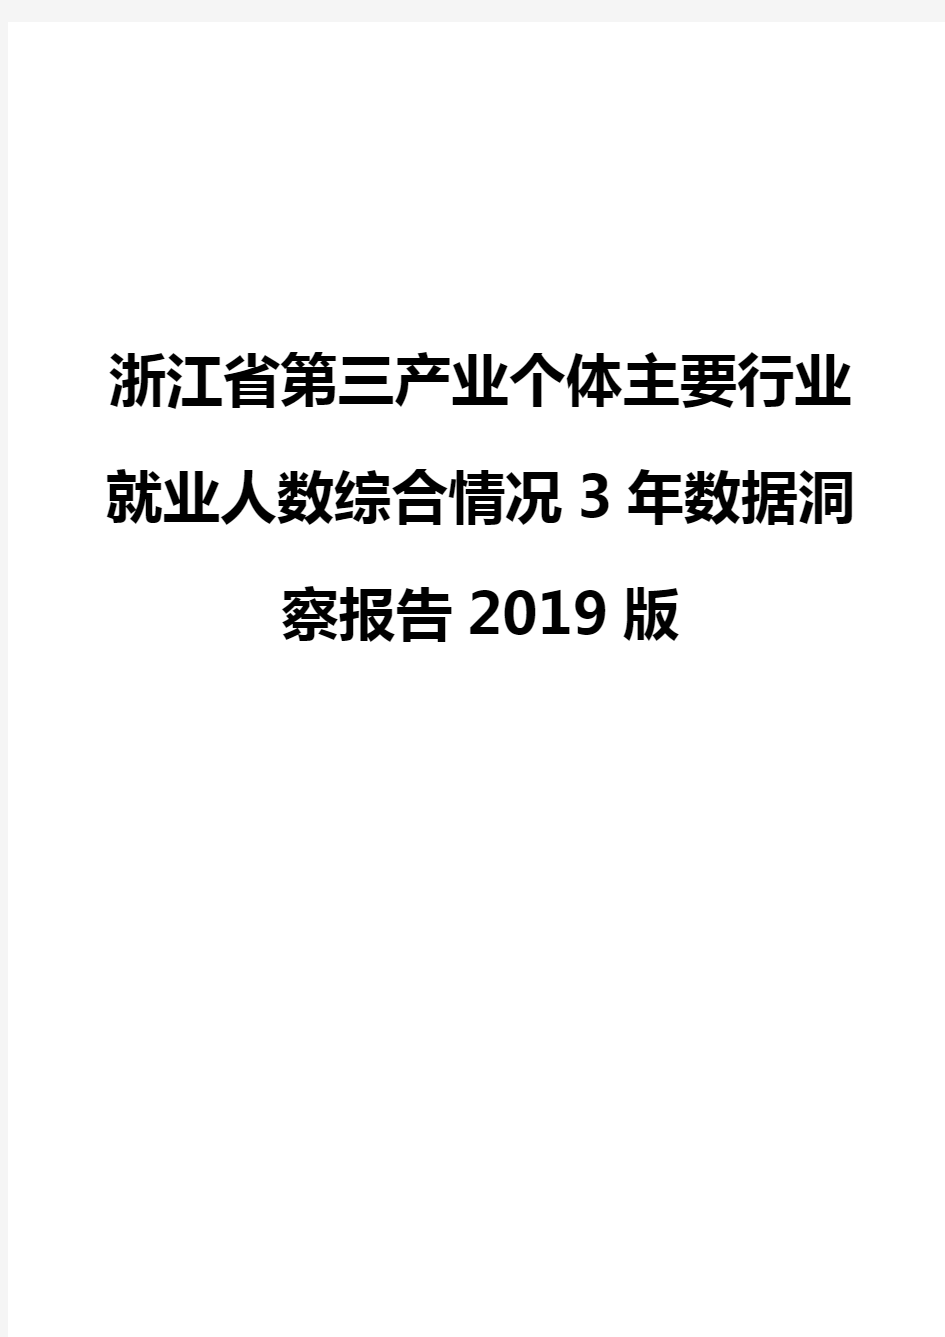 浙江省第三产业个体主要行业就业人数综合情况3年数据洞察报告2019版